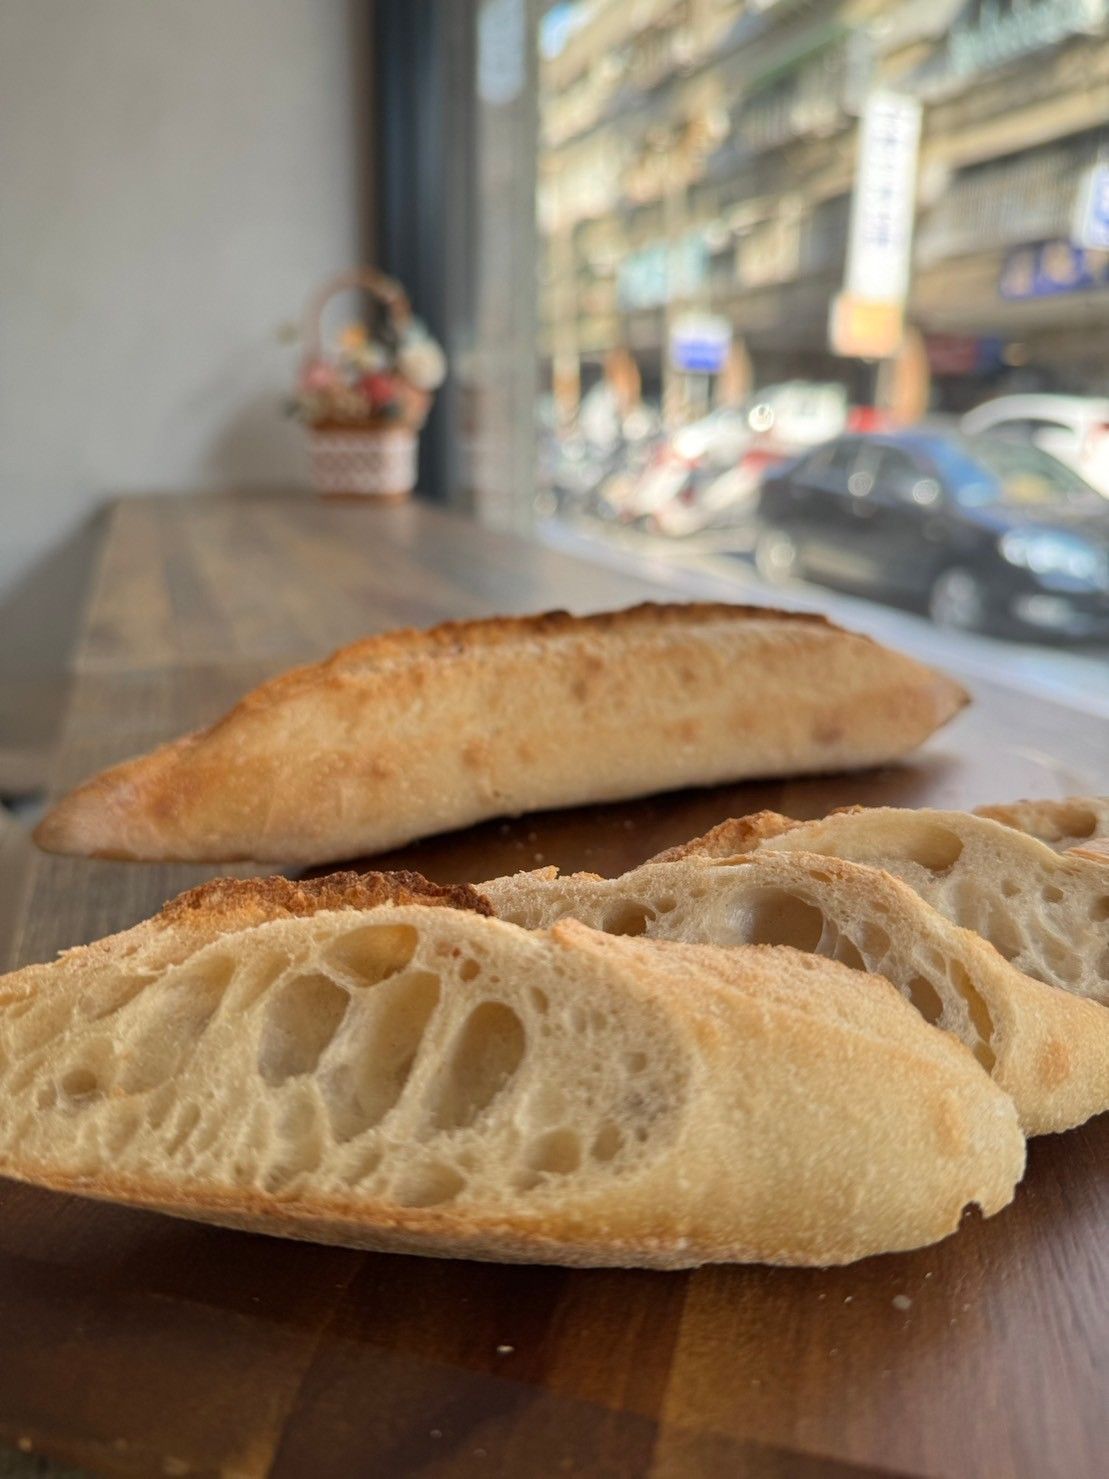 歐式麵包